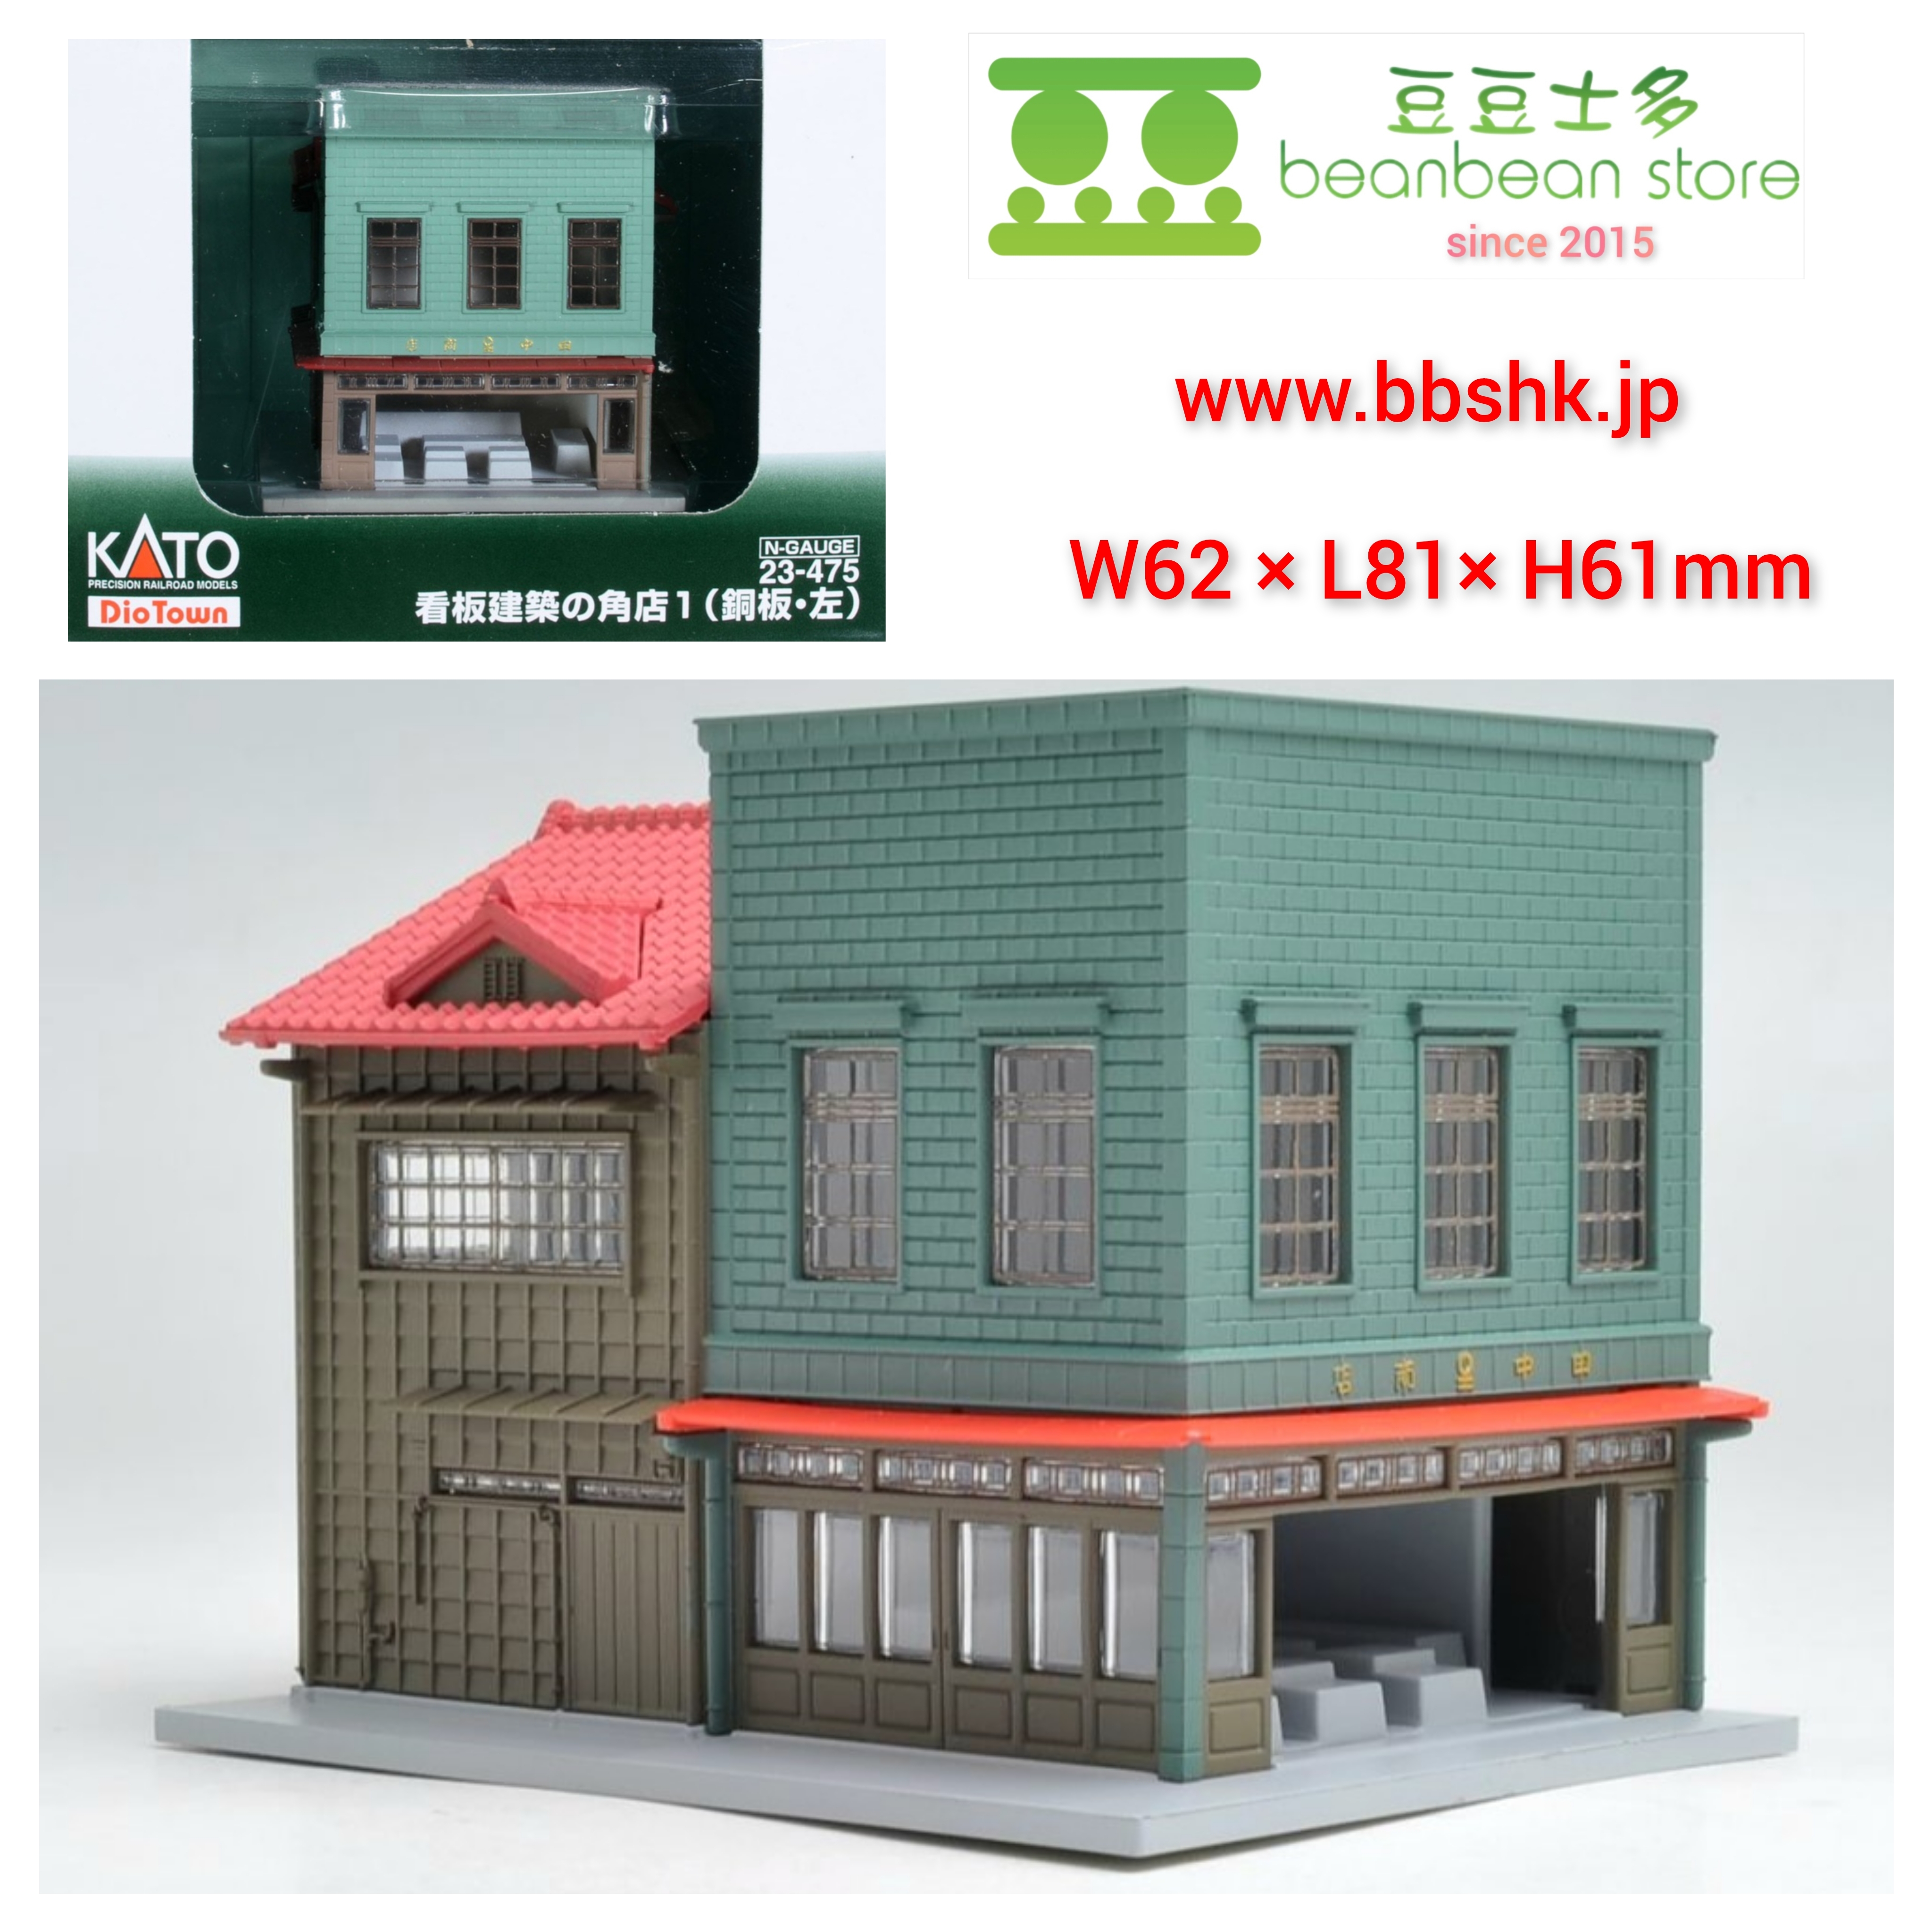 KATO 23-475 DioTown 看板建築の角店1 (銅板・左) (重厚感ある青果店)